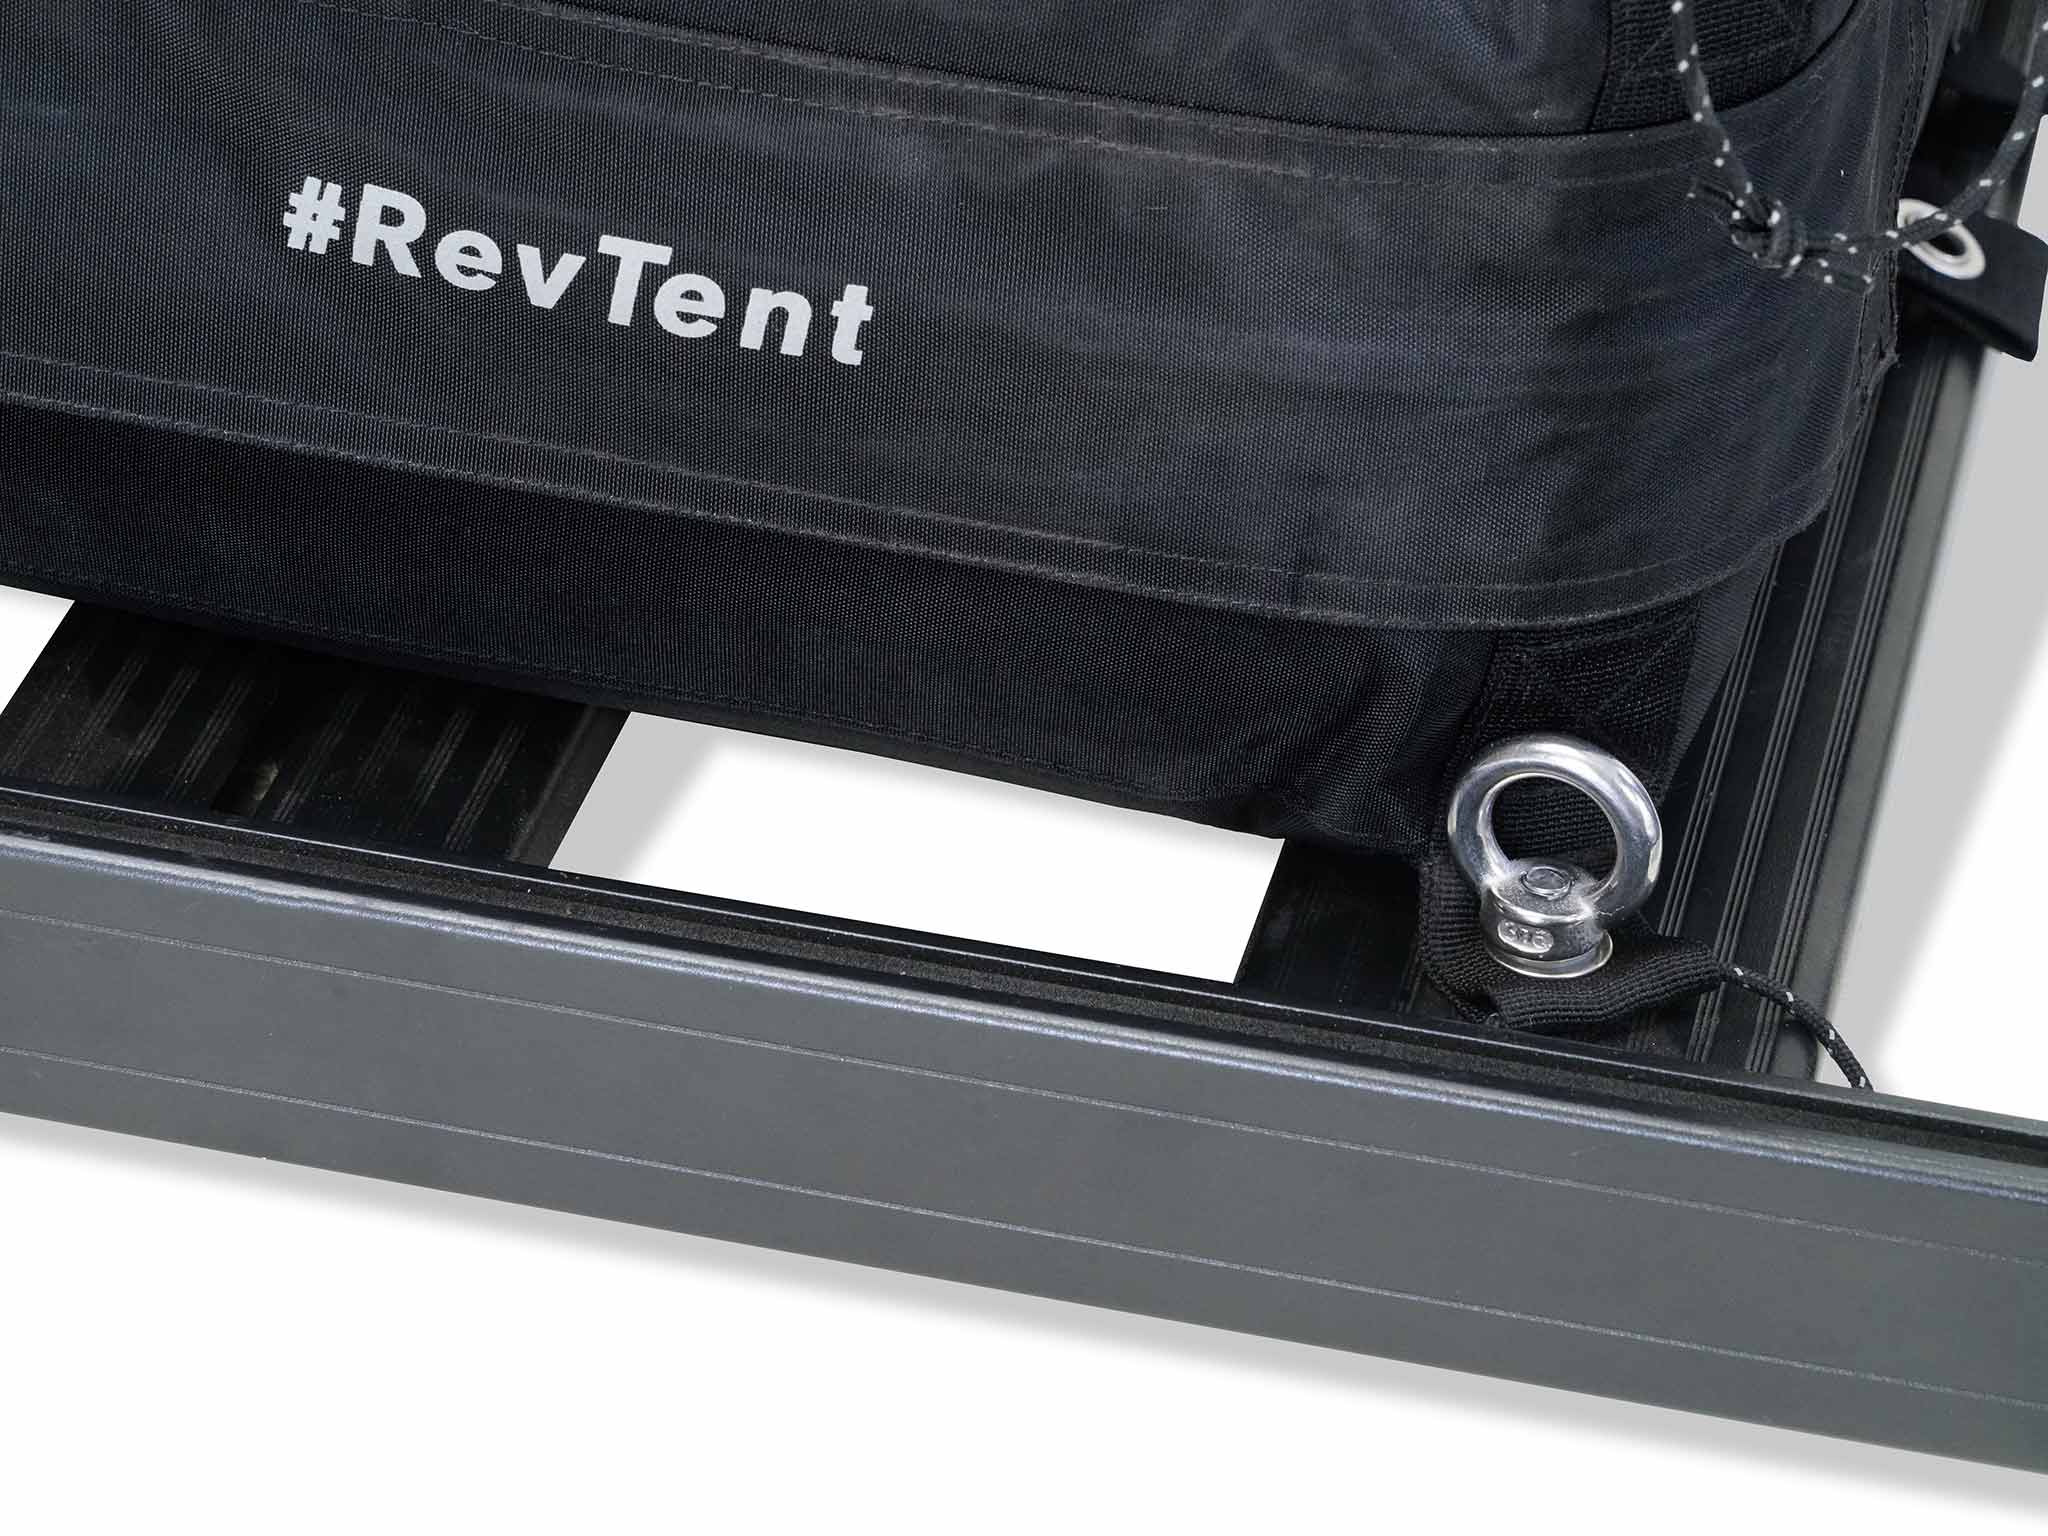 rev Tent rack mount kit by c6 outdoor